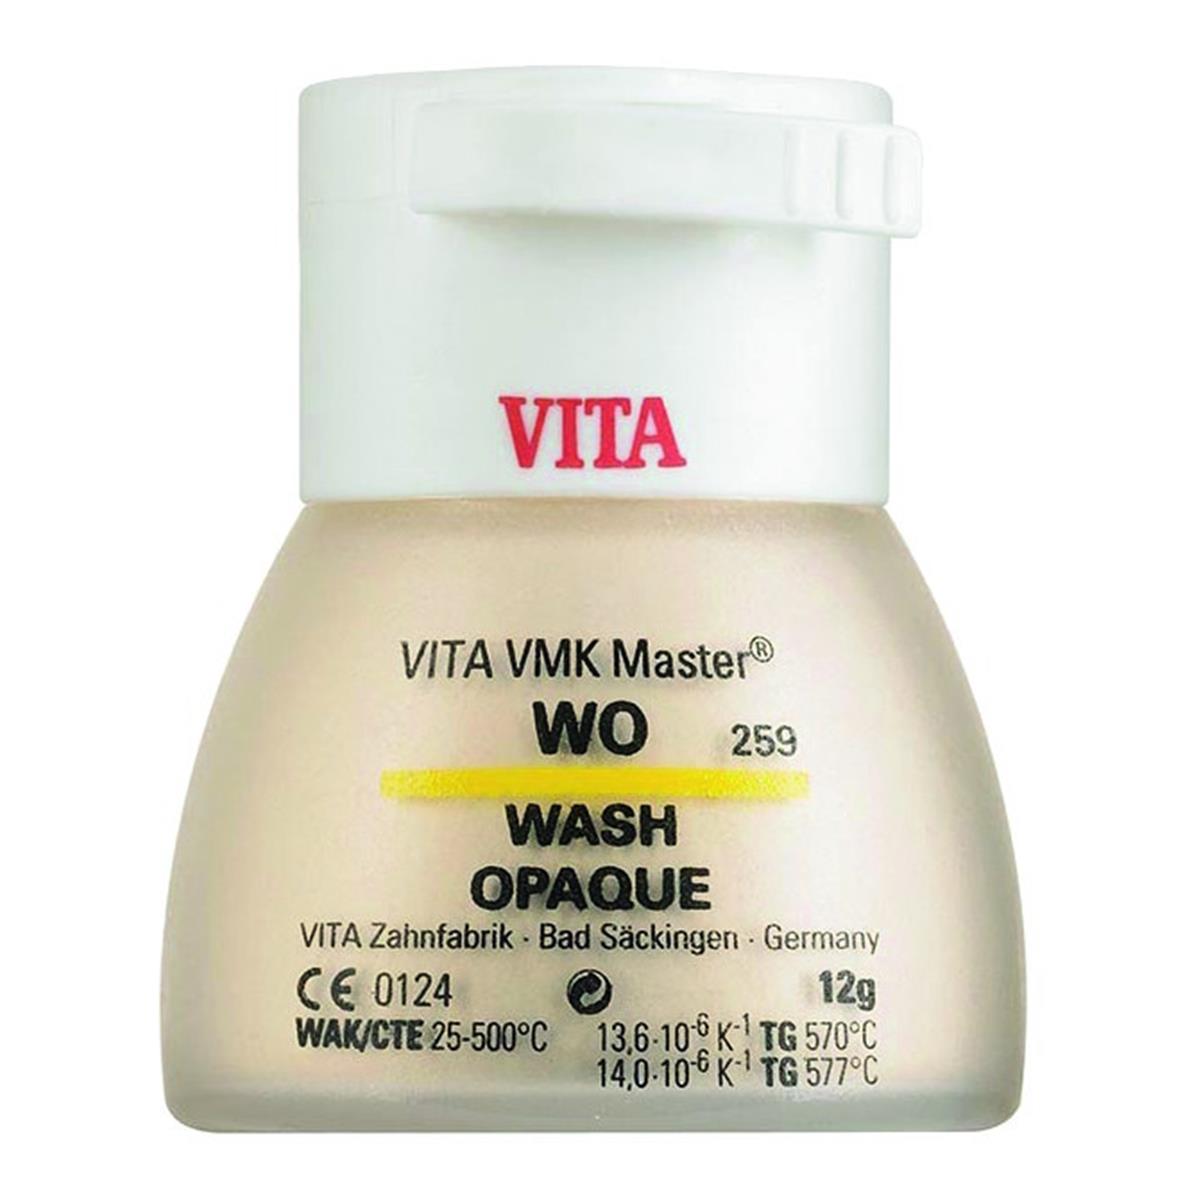 VMK Master VITA - Wash Opaque - WO - Le pot de 12 g